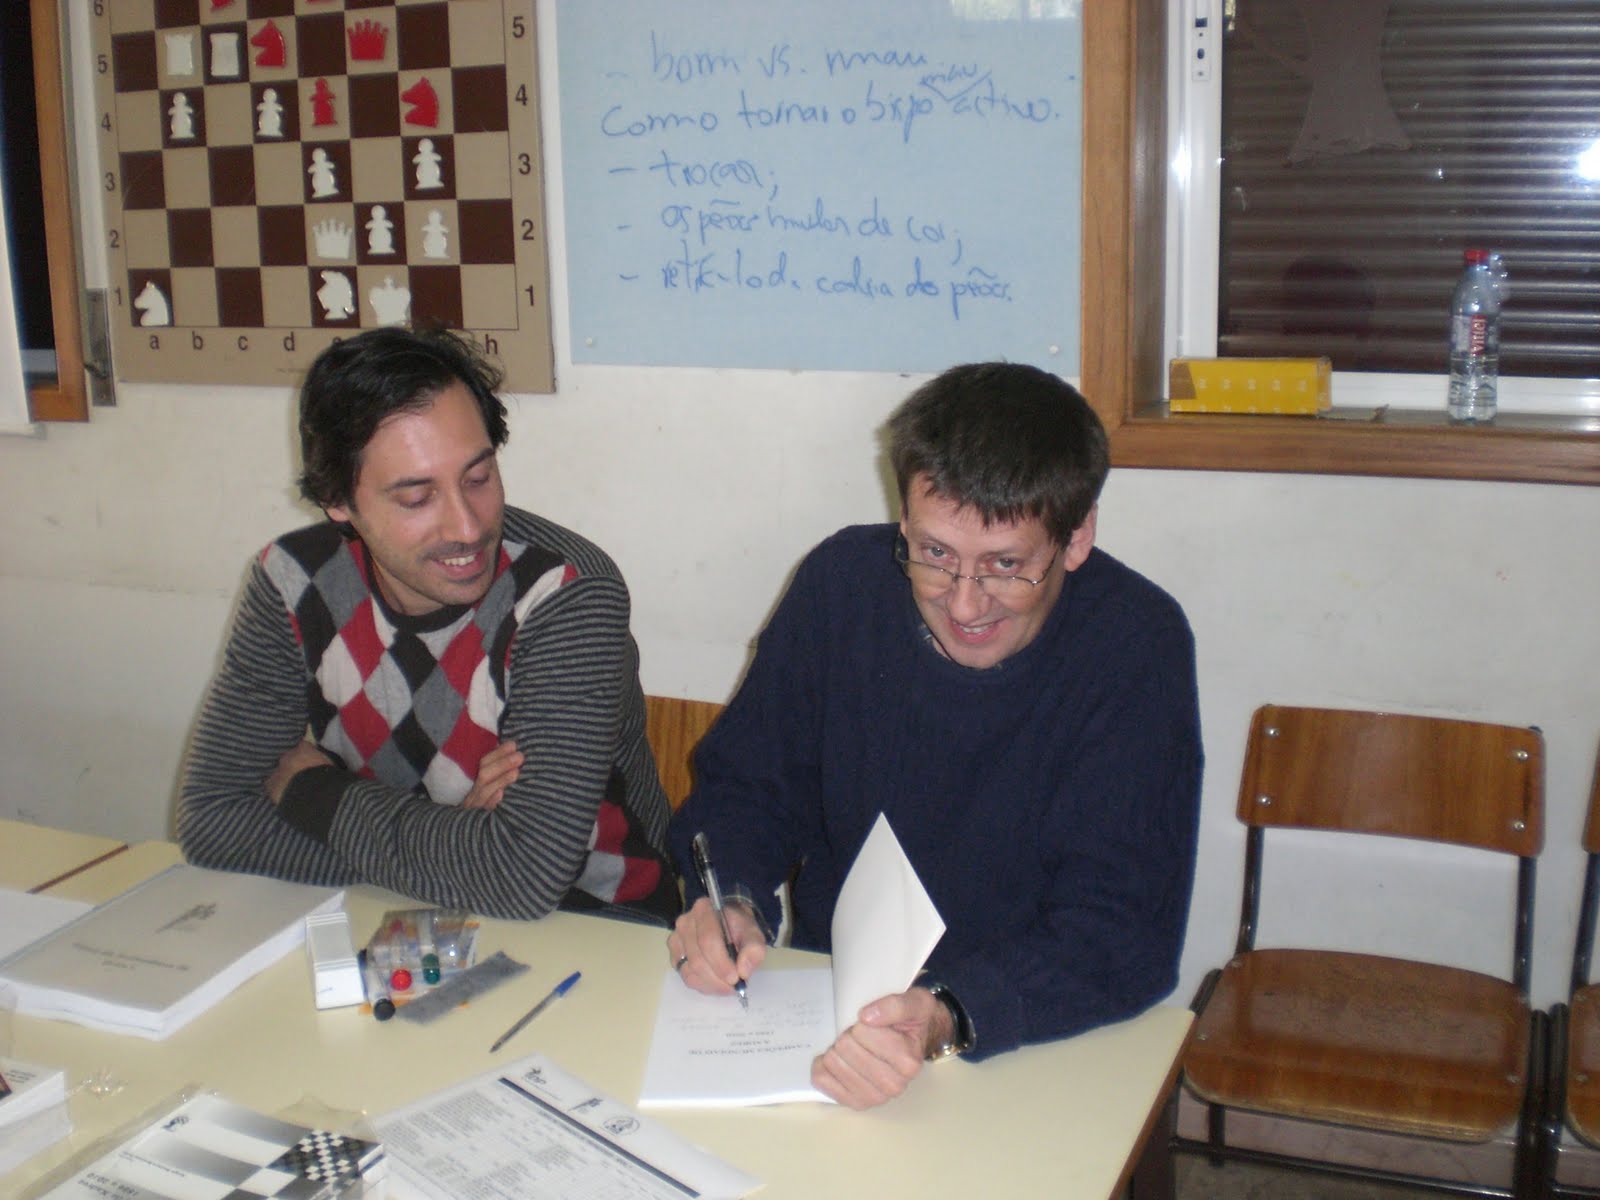 MI Antonio Fróis: «Técnicas e Estratégias de Xadrez»